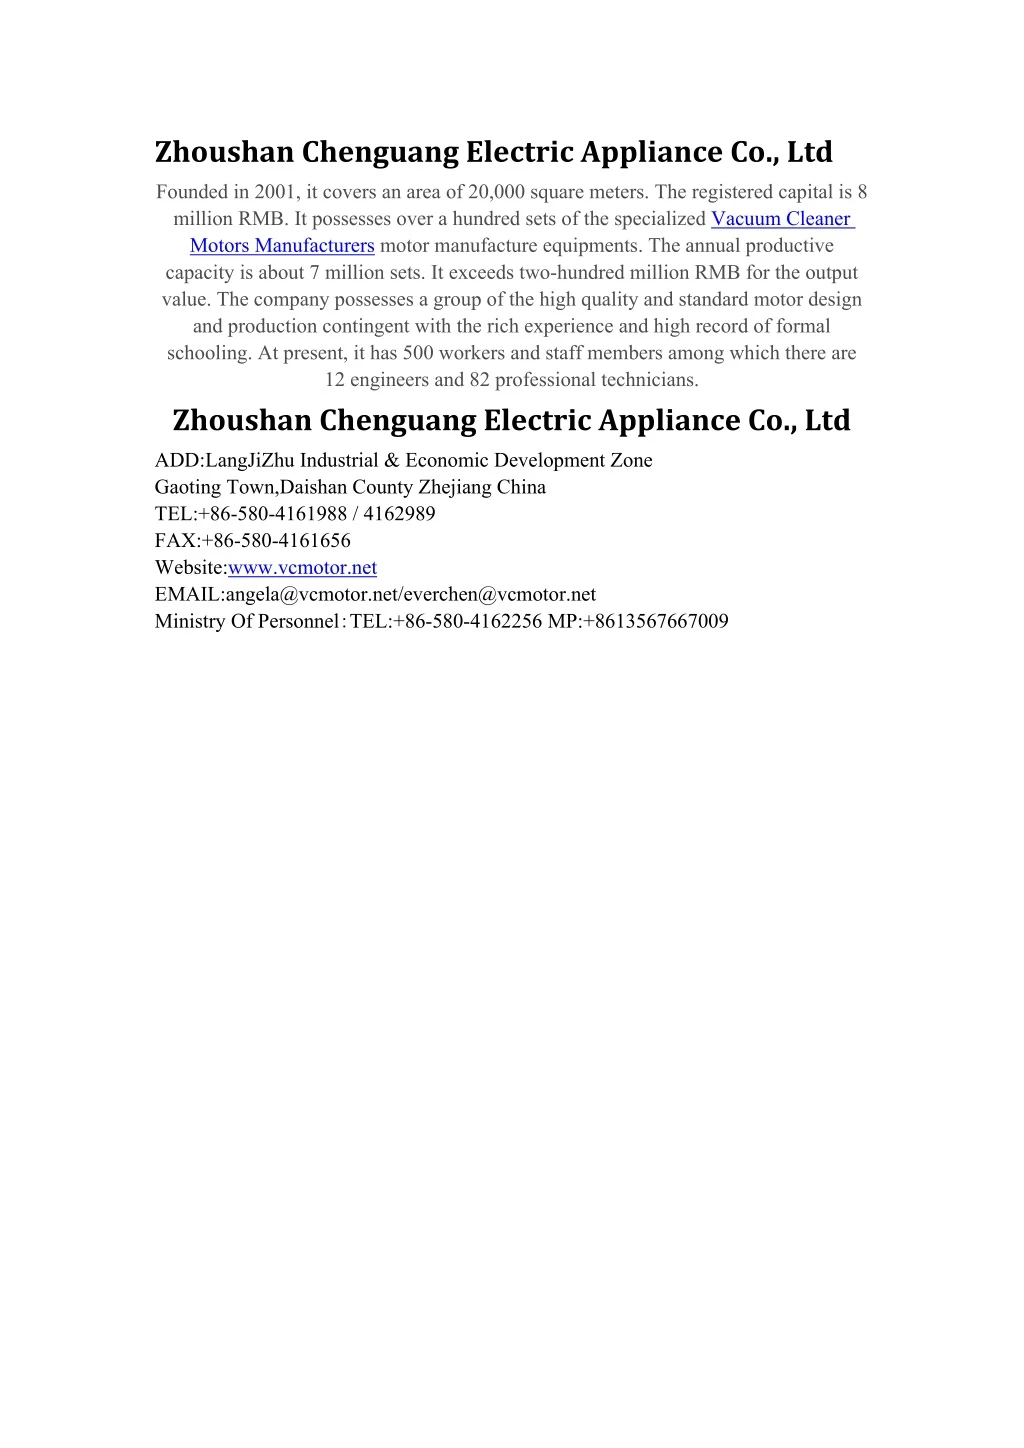 zhoushan chenguang electric appliance